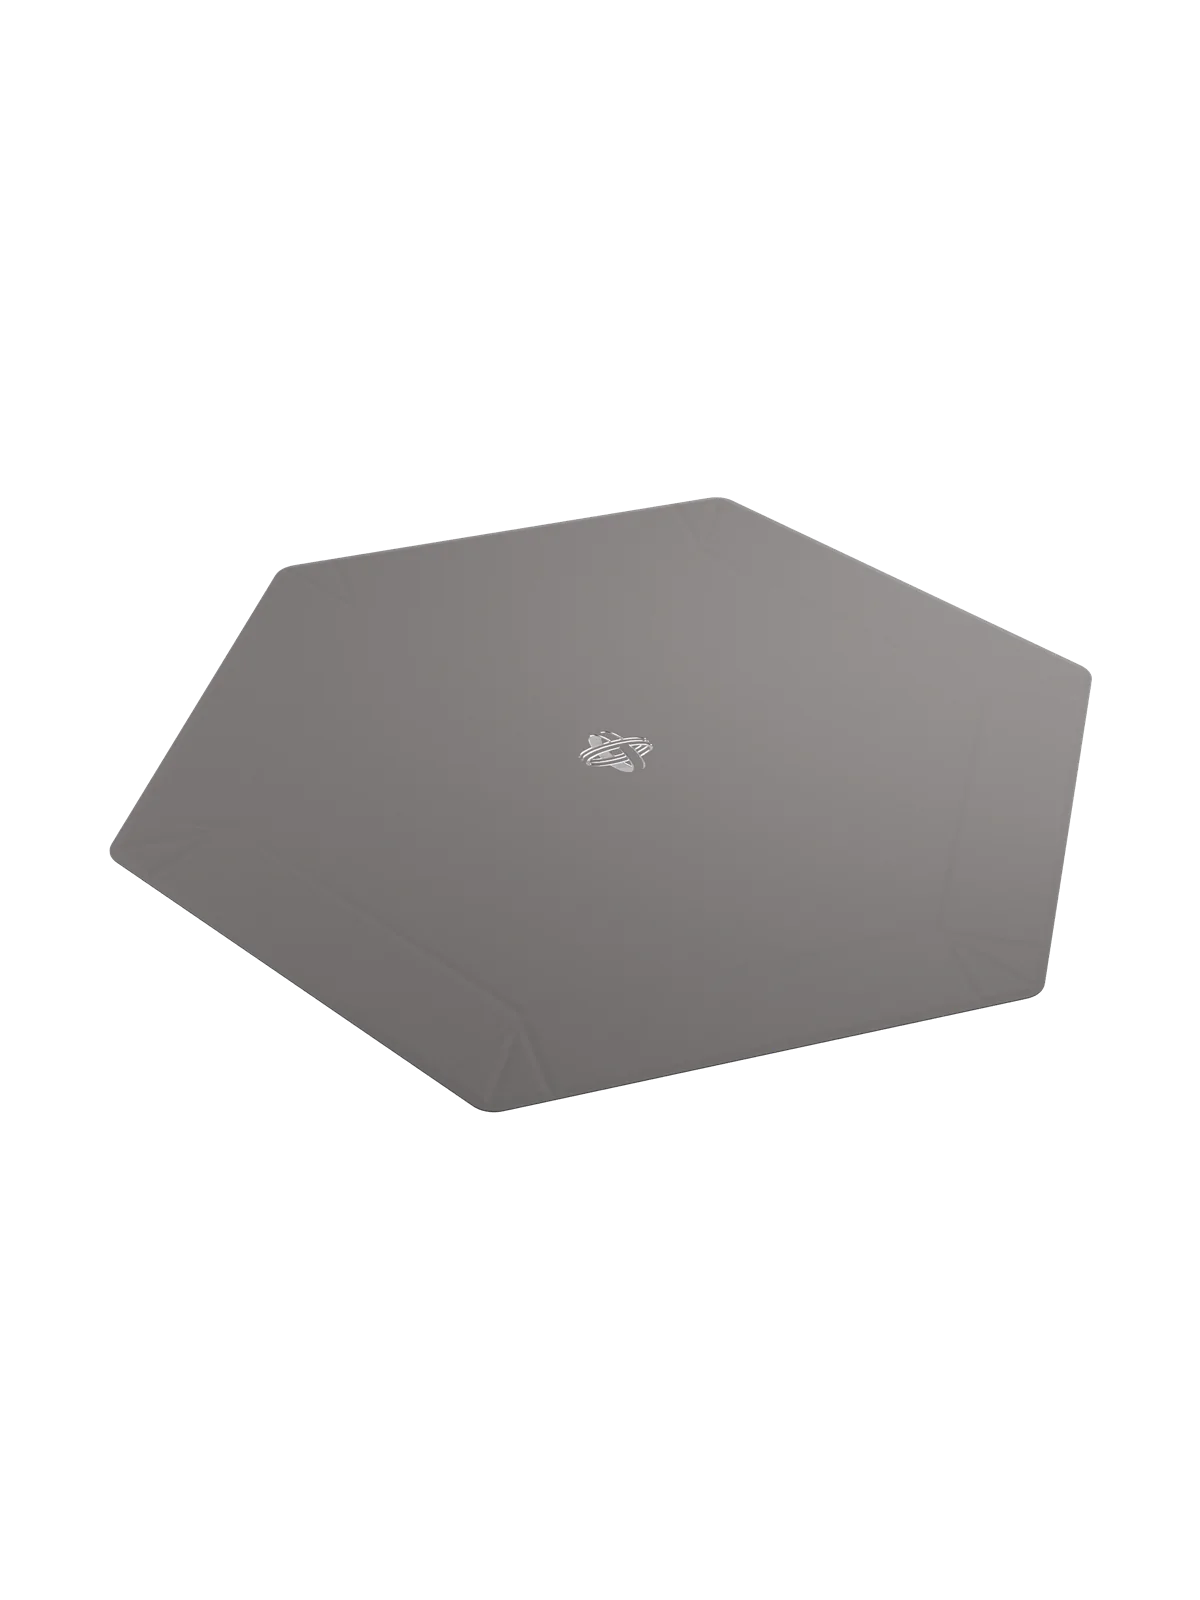 Comprar Magnetic Dice Tray Hexagonal Black/Gray barato al mejor precio